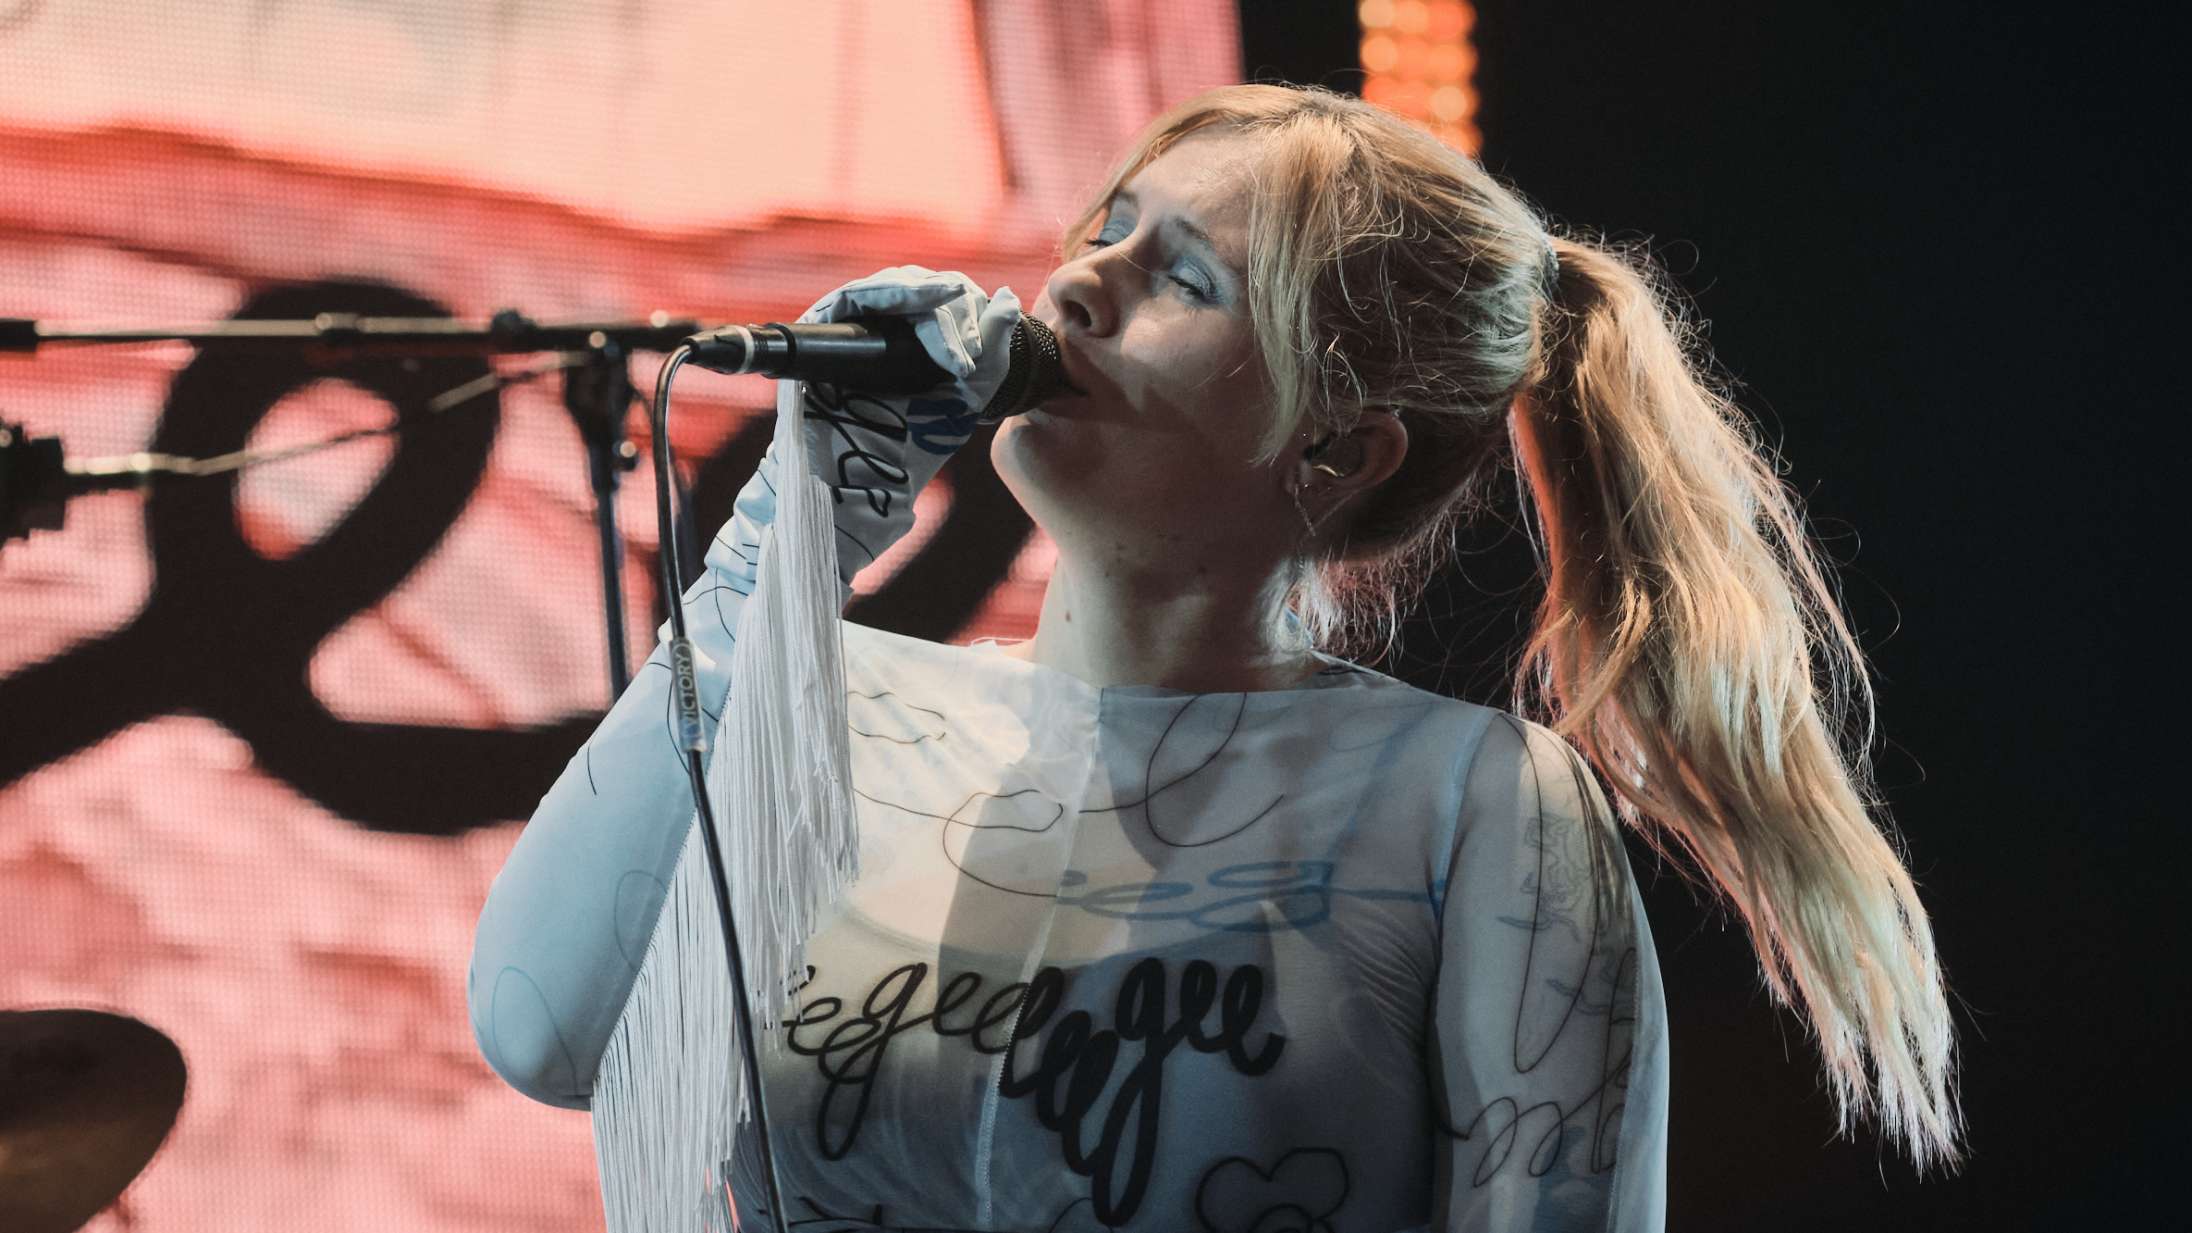 Sublimt musikalsk overskud gav Eee Gee overhånden under skybrud på Roskilde Festival